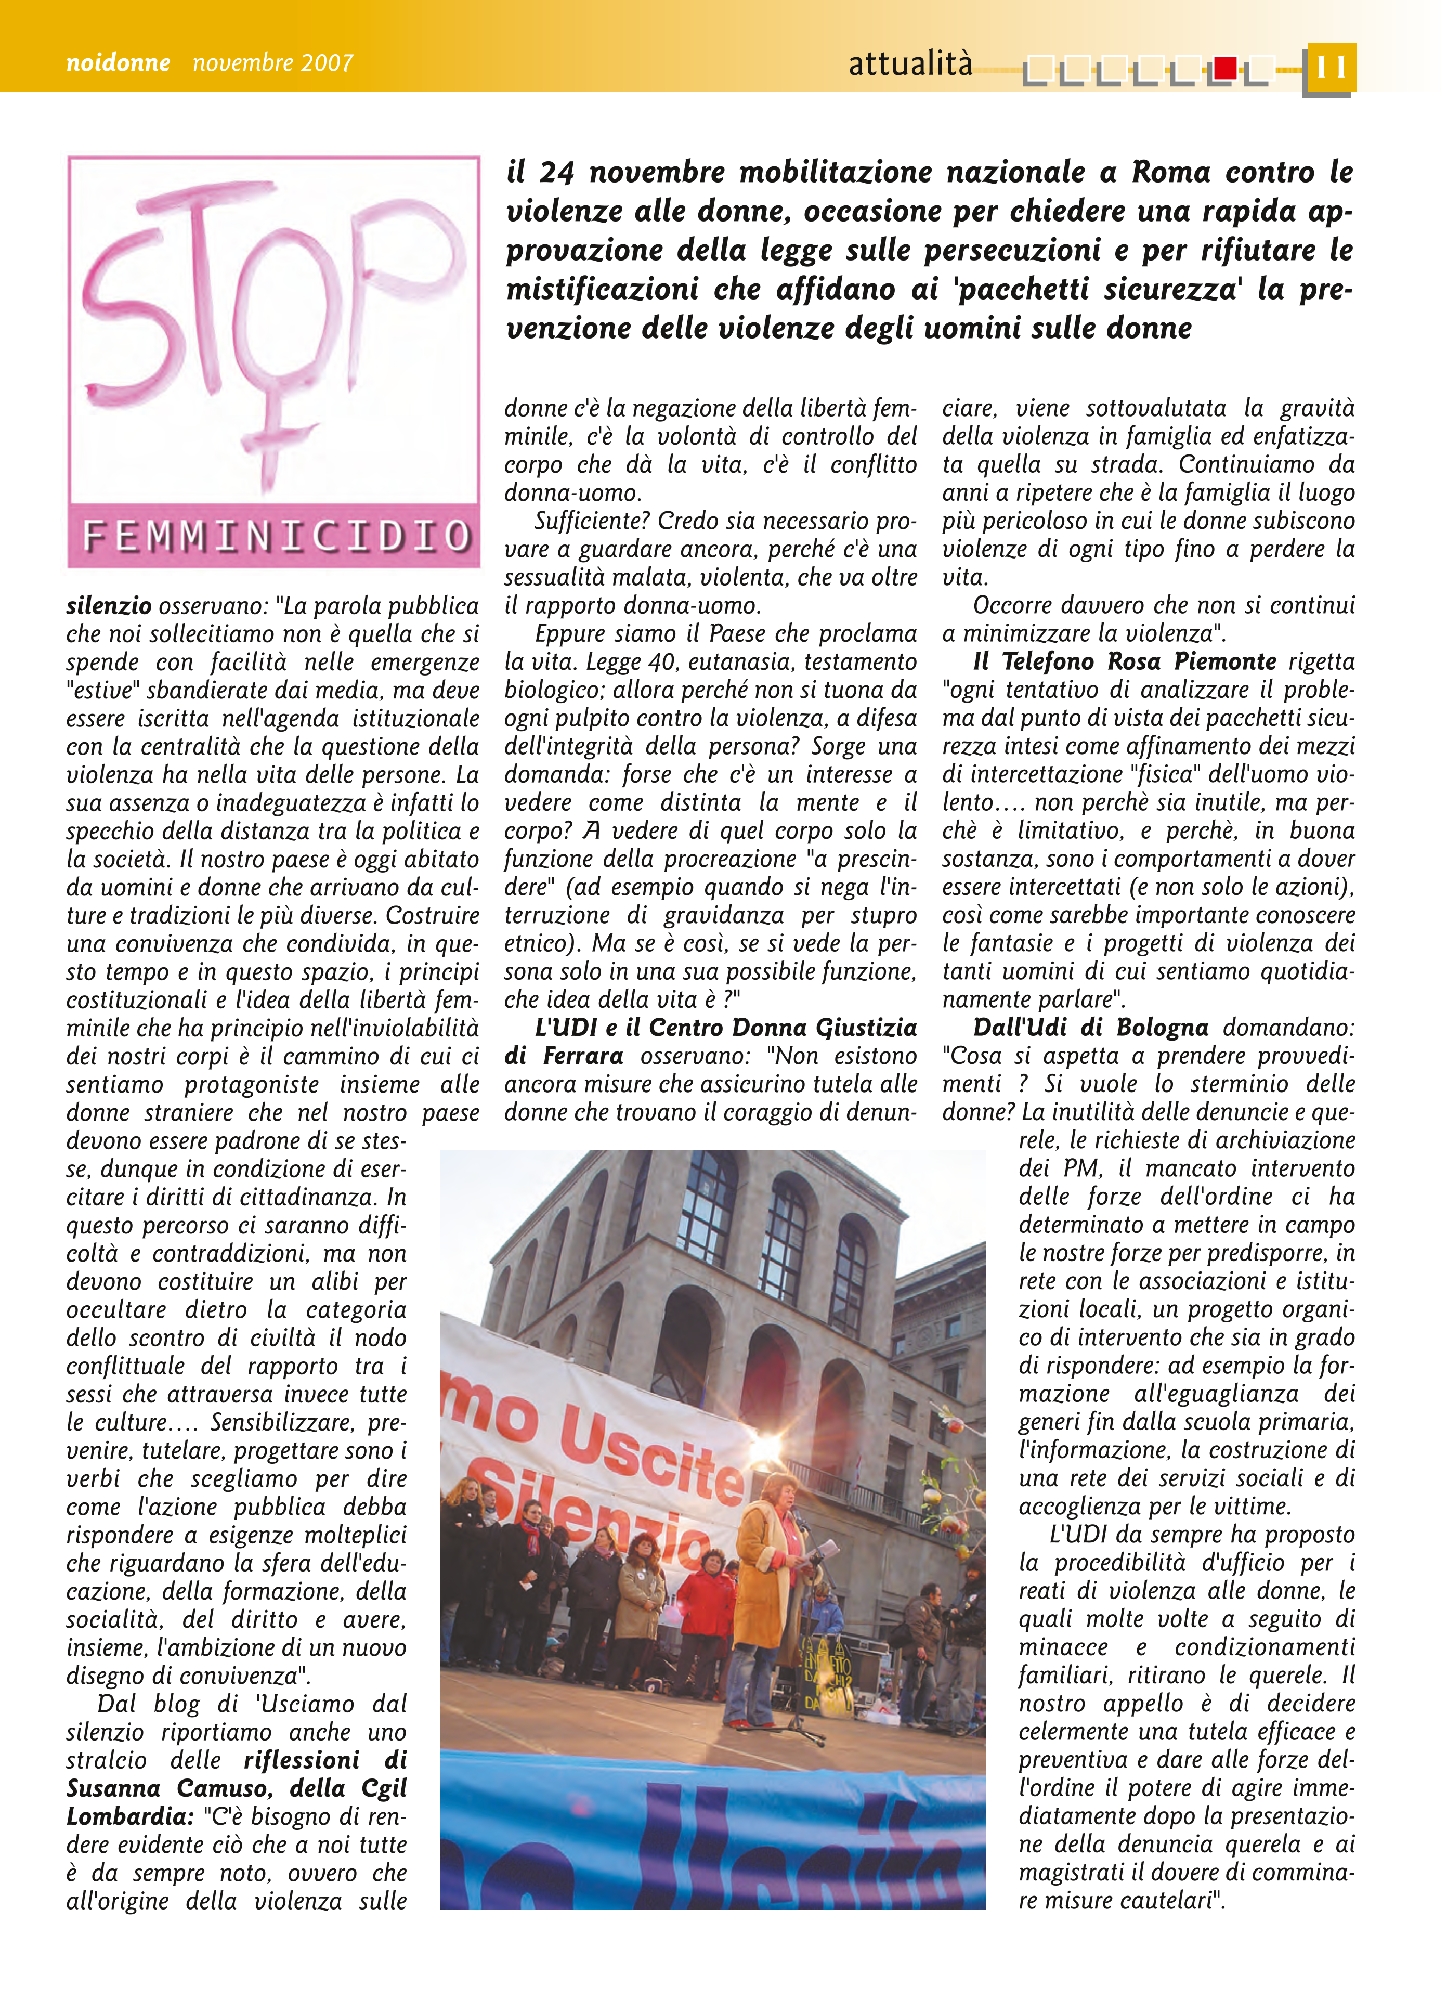 Foto: Stop femminicidio